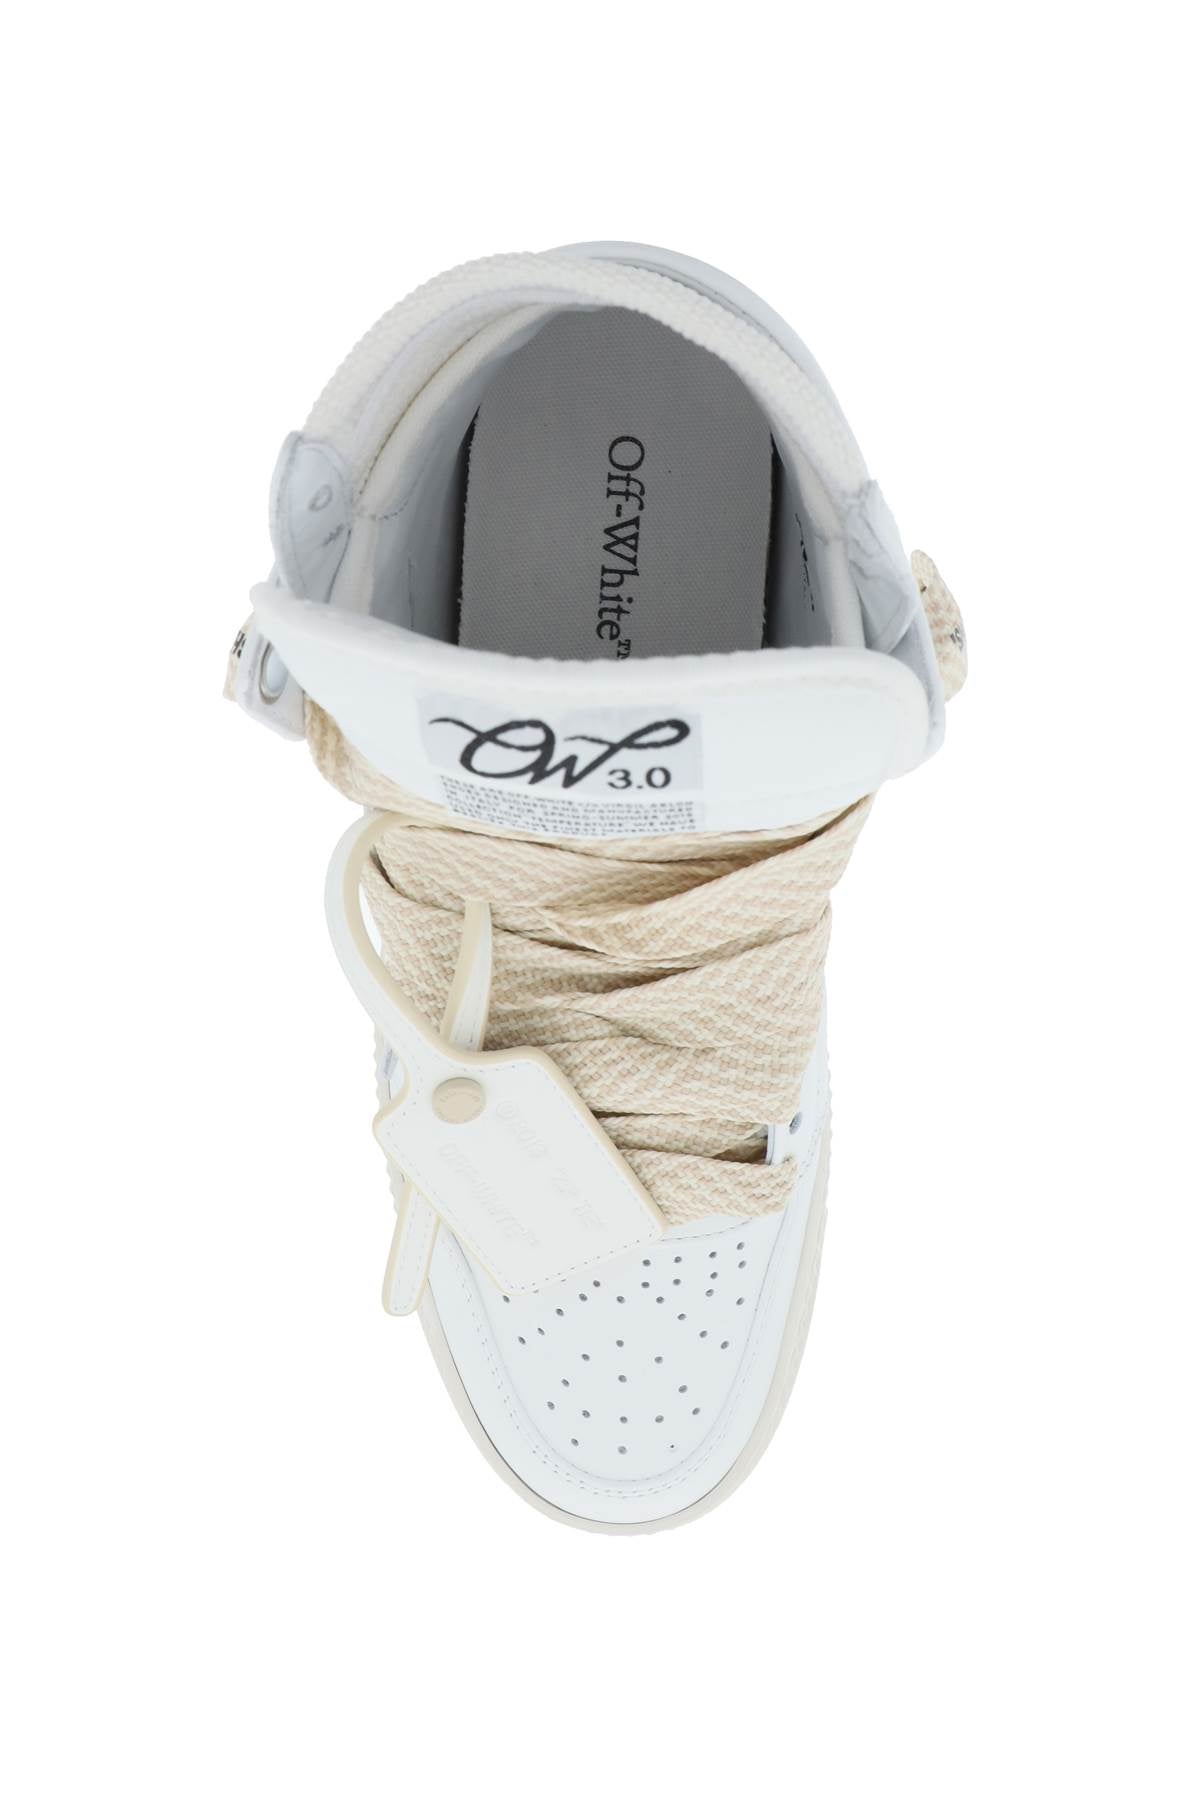 Giày 3.0 OFF-COURT cho nữ - Phong cách bóng rổ cổ điển với da và vải dệt co giãn